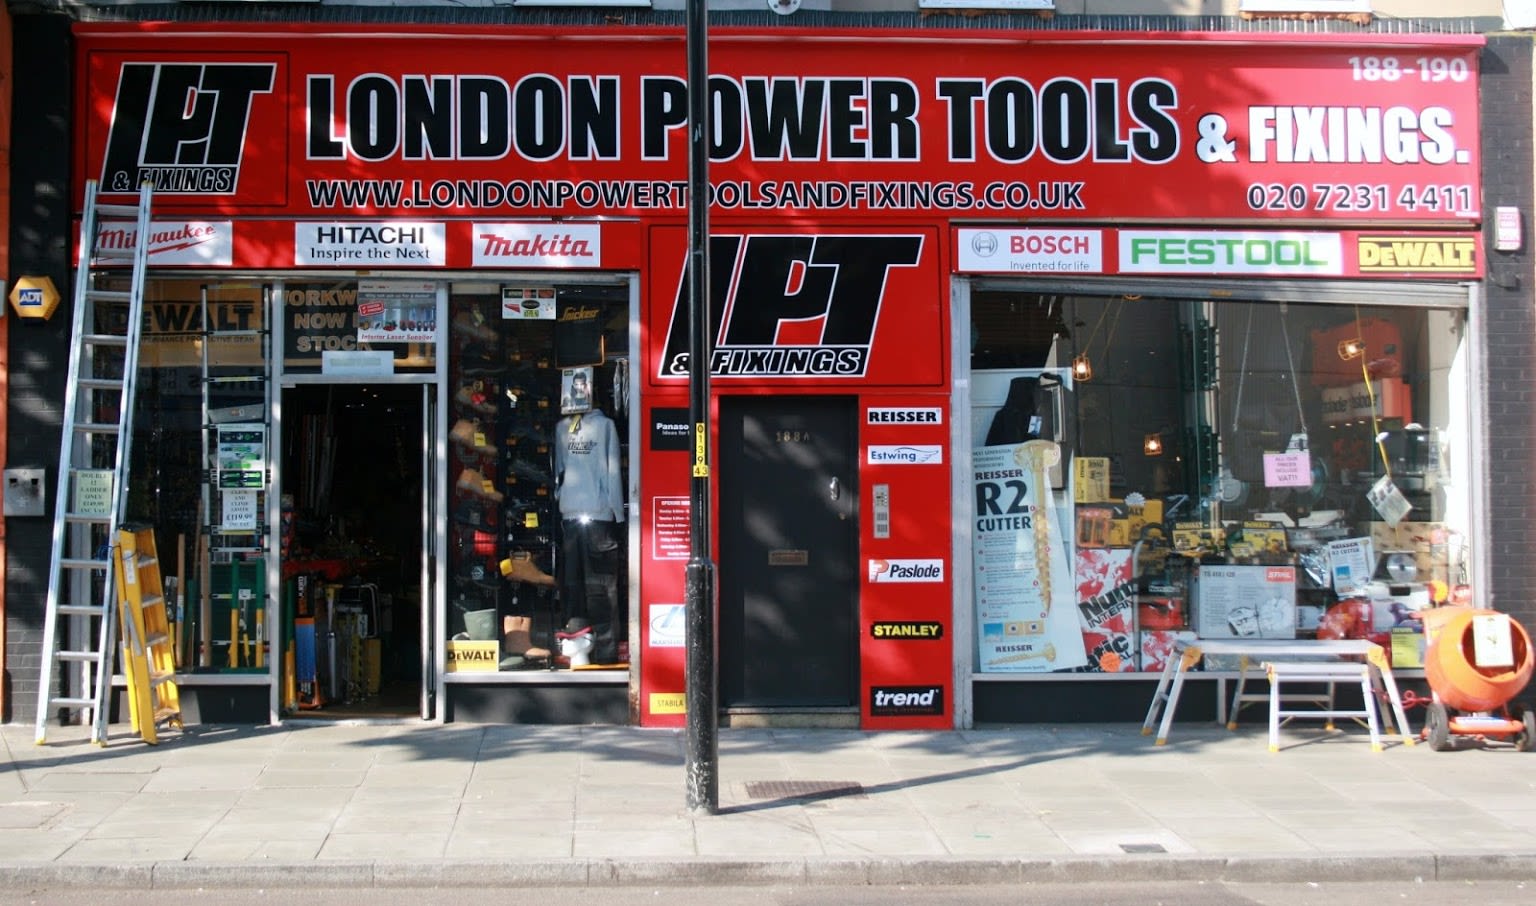 London Power Tools & Fixings